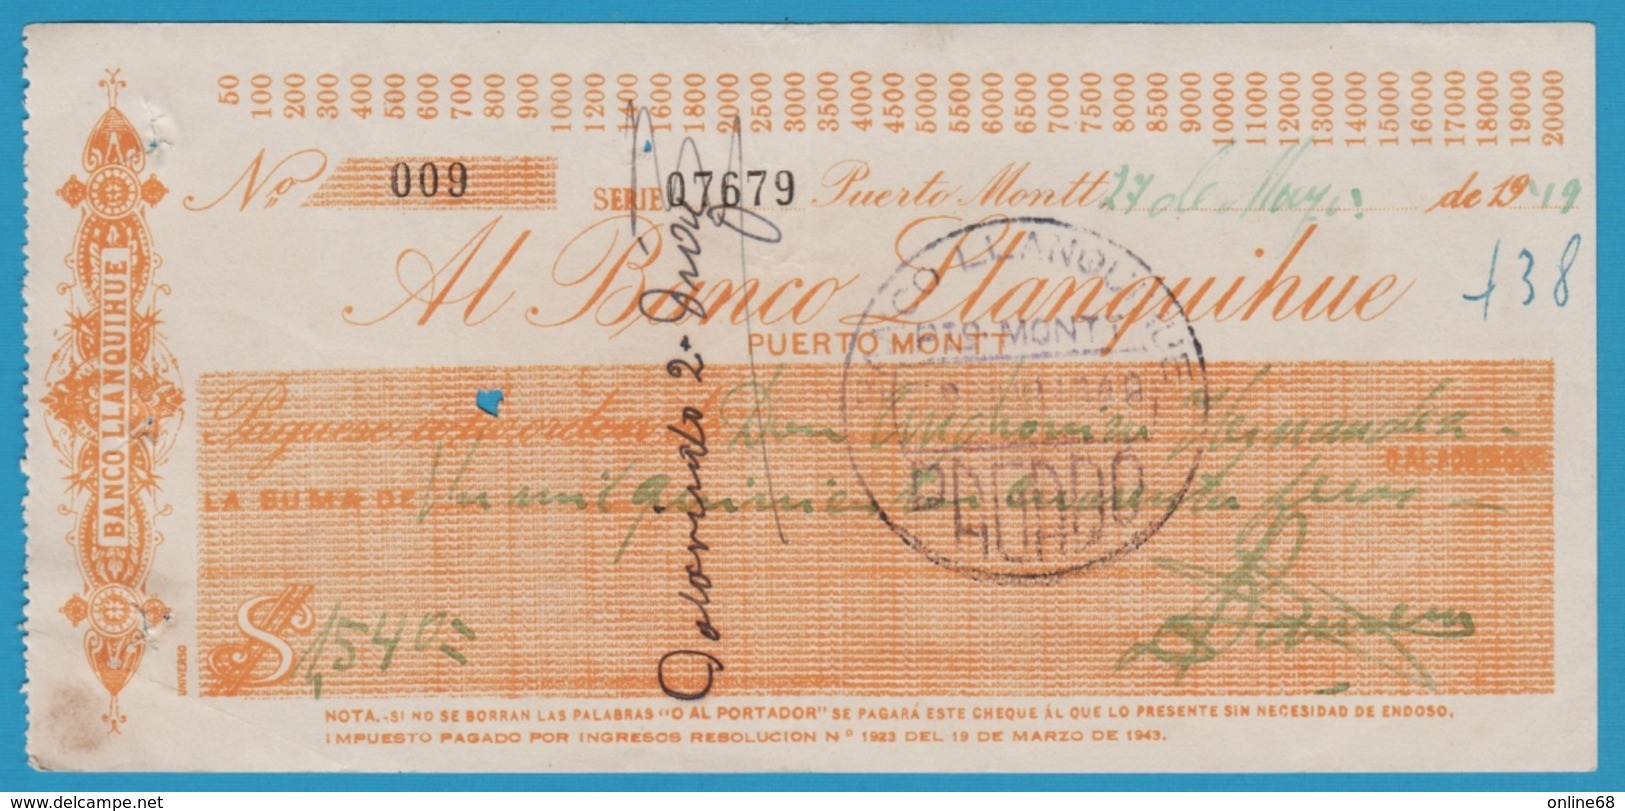 CHILE PUERTO MONTT CHEQUE AL BANCO LLANQUIHUE 1949 - Chèques & Chèques De Voyage